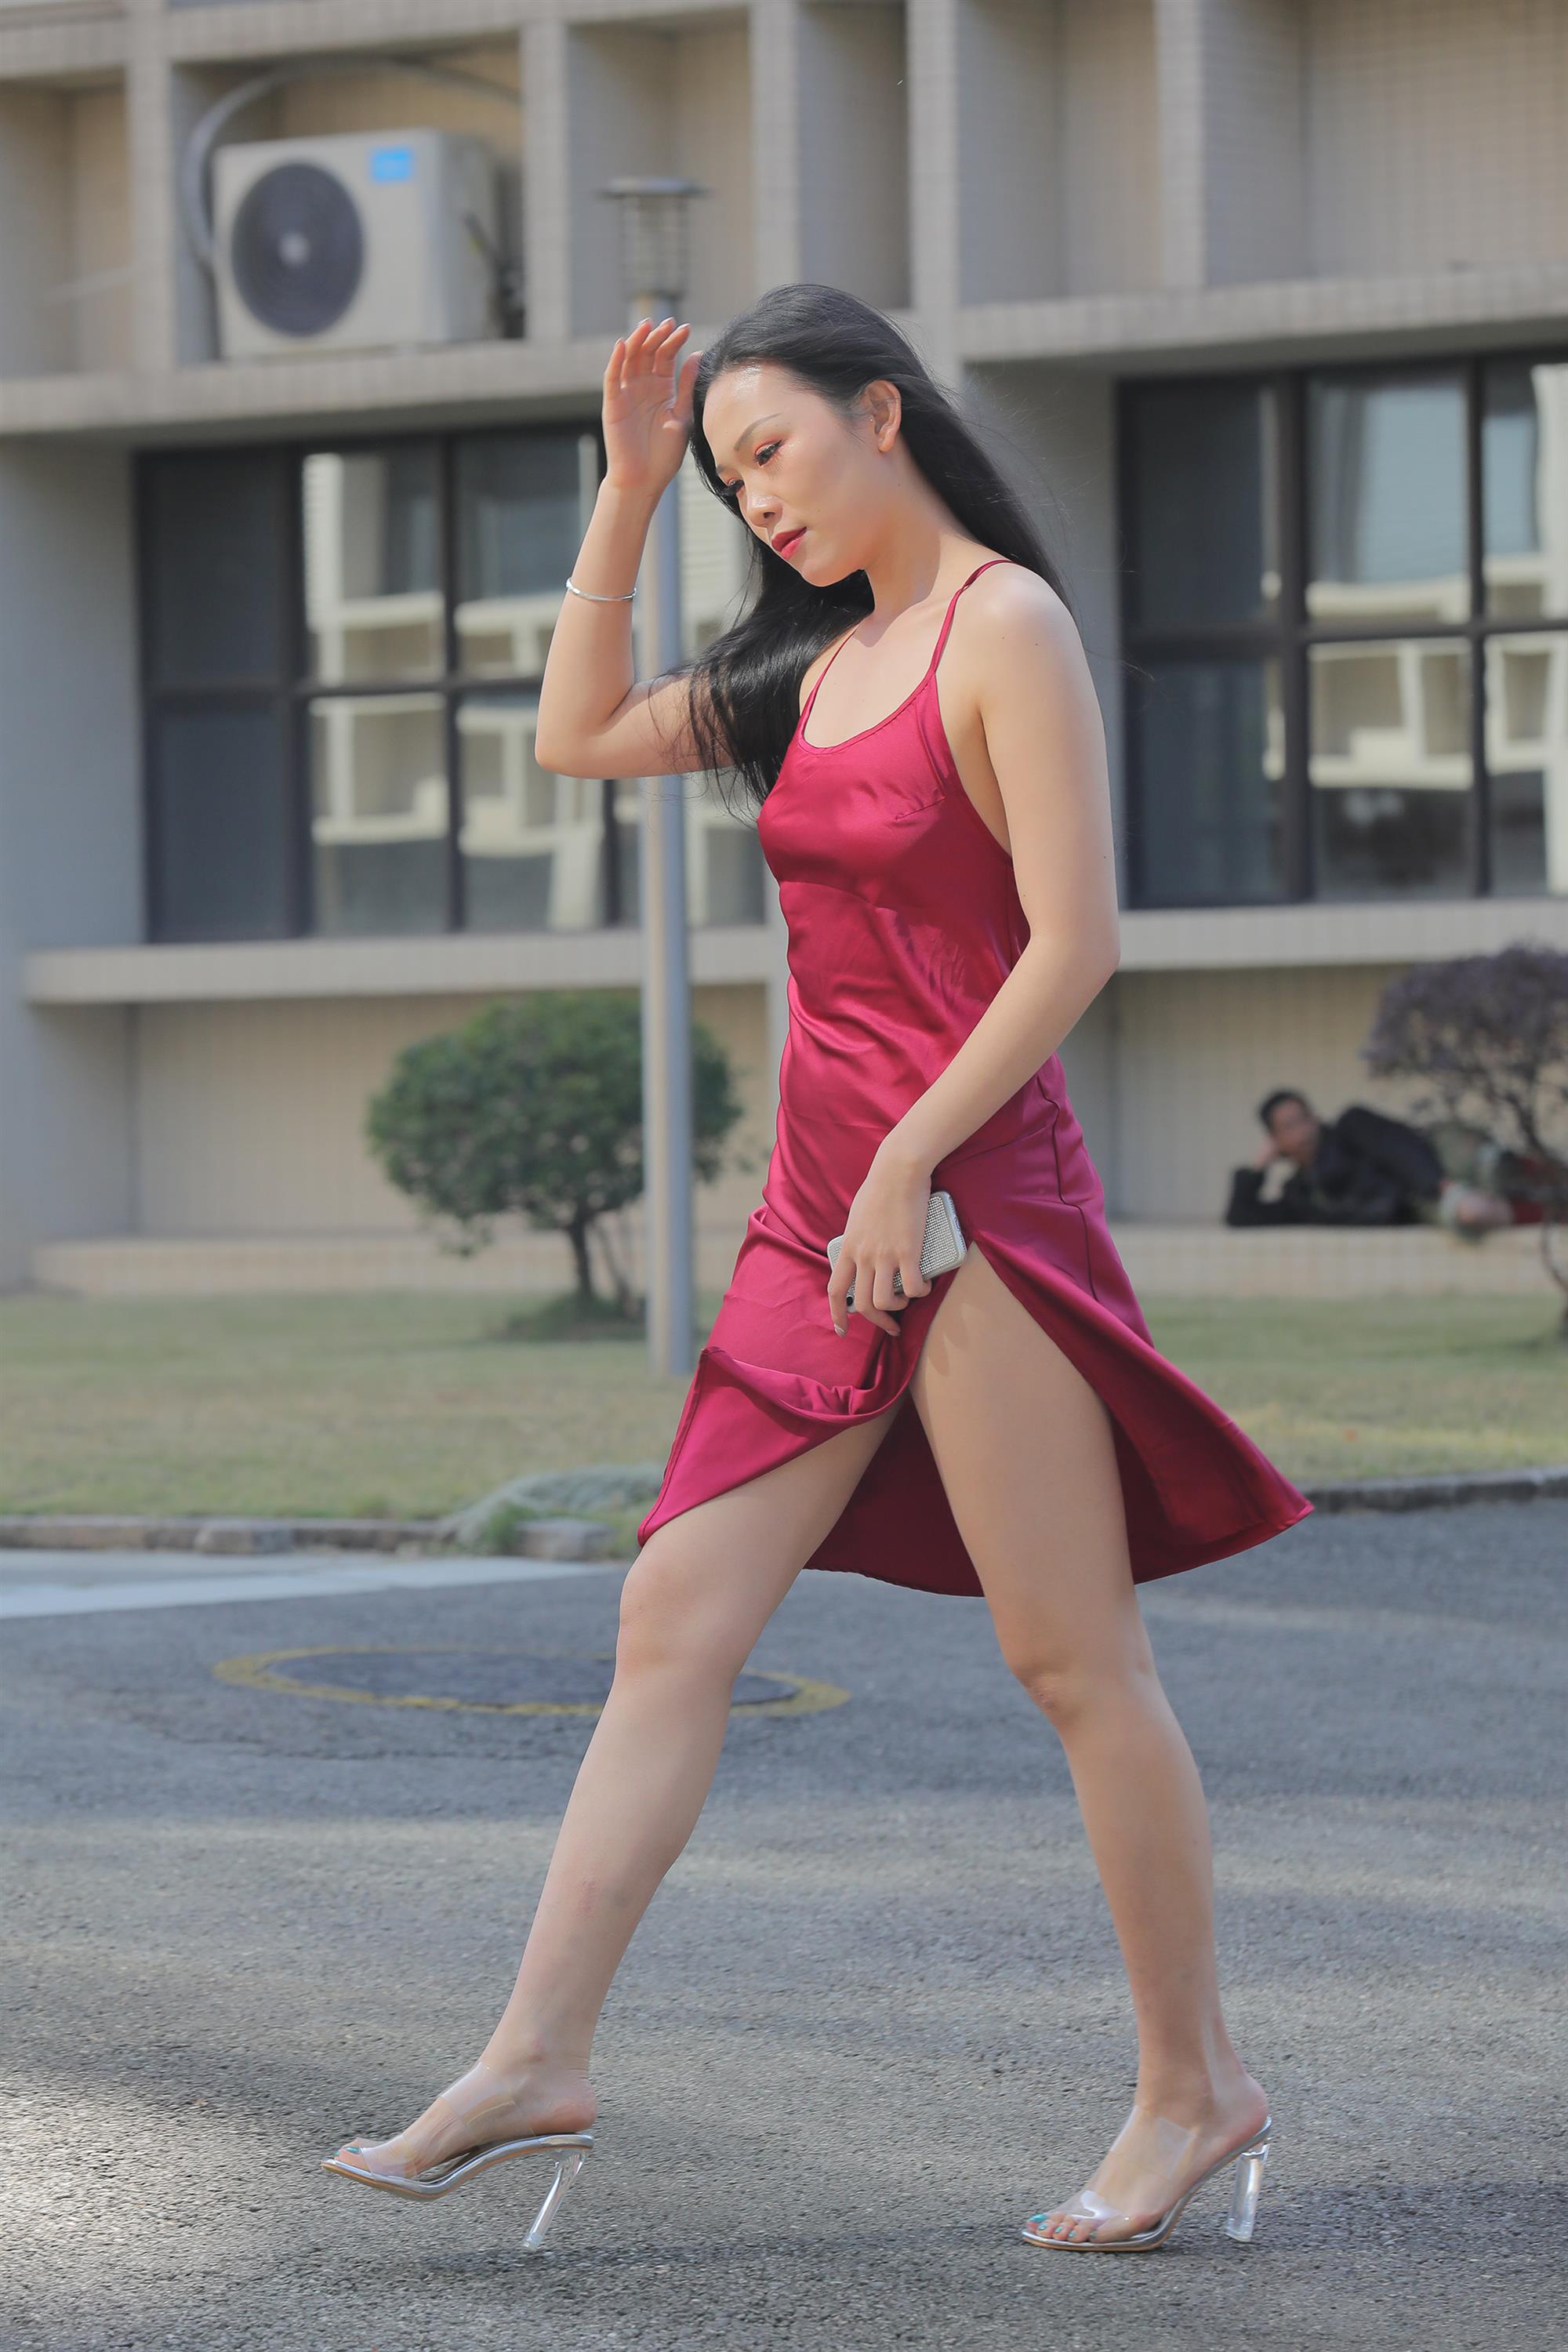 Street beauty in a red dress - 23.jpg